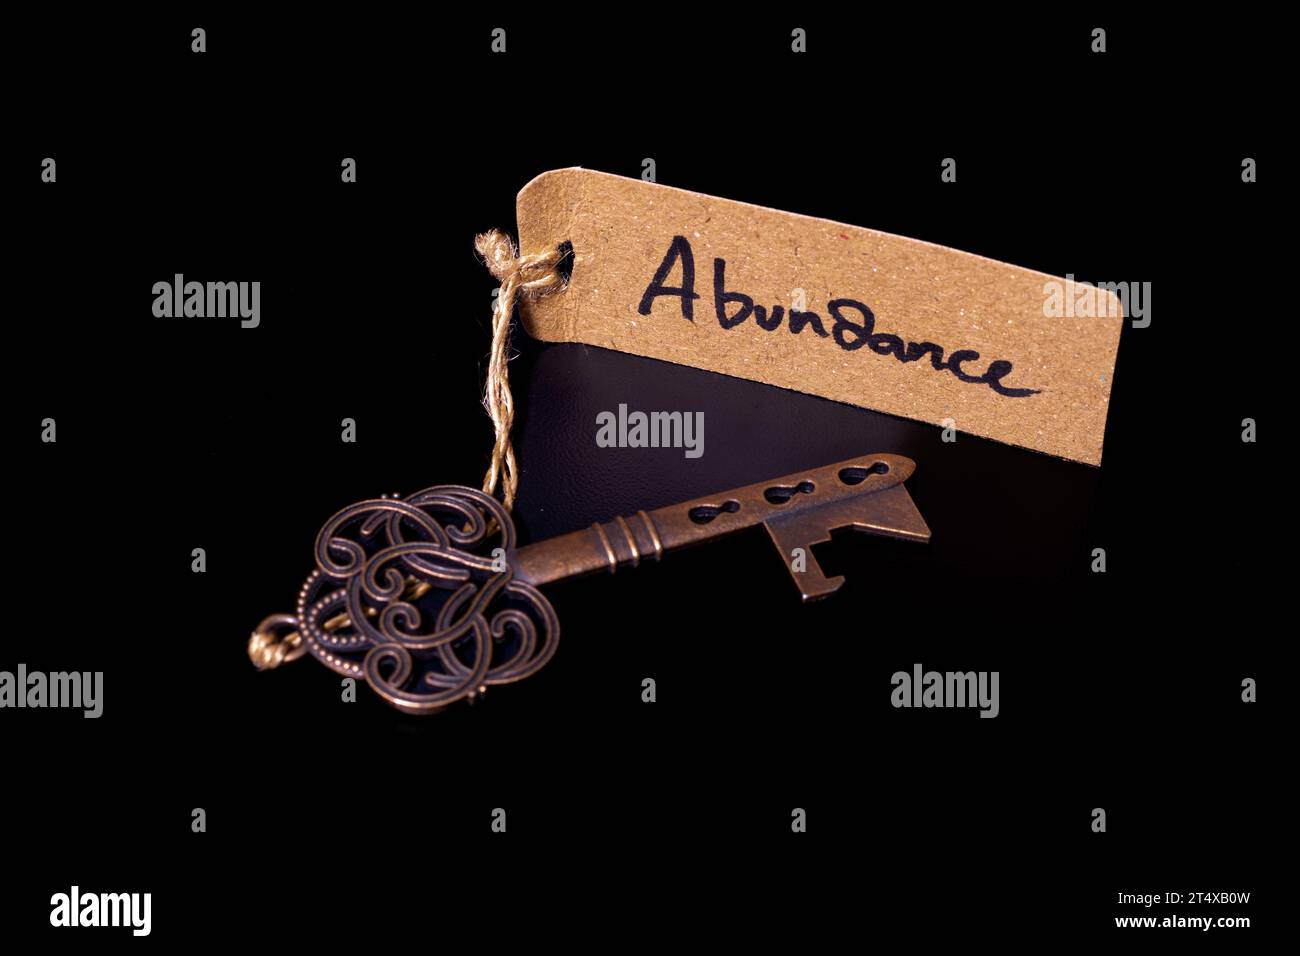 Key to abundant life concept - Old key with abundance tag isolated on black background Stock Photo